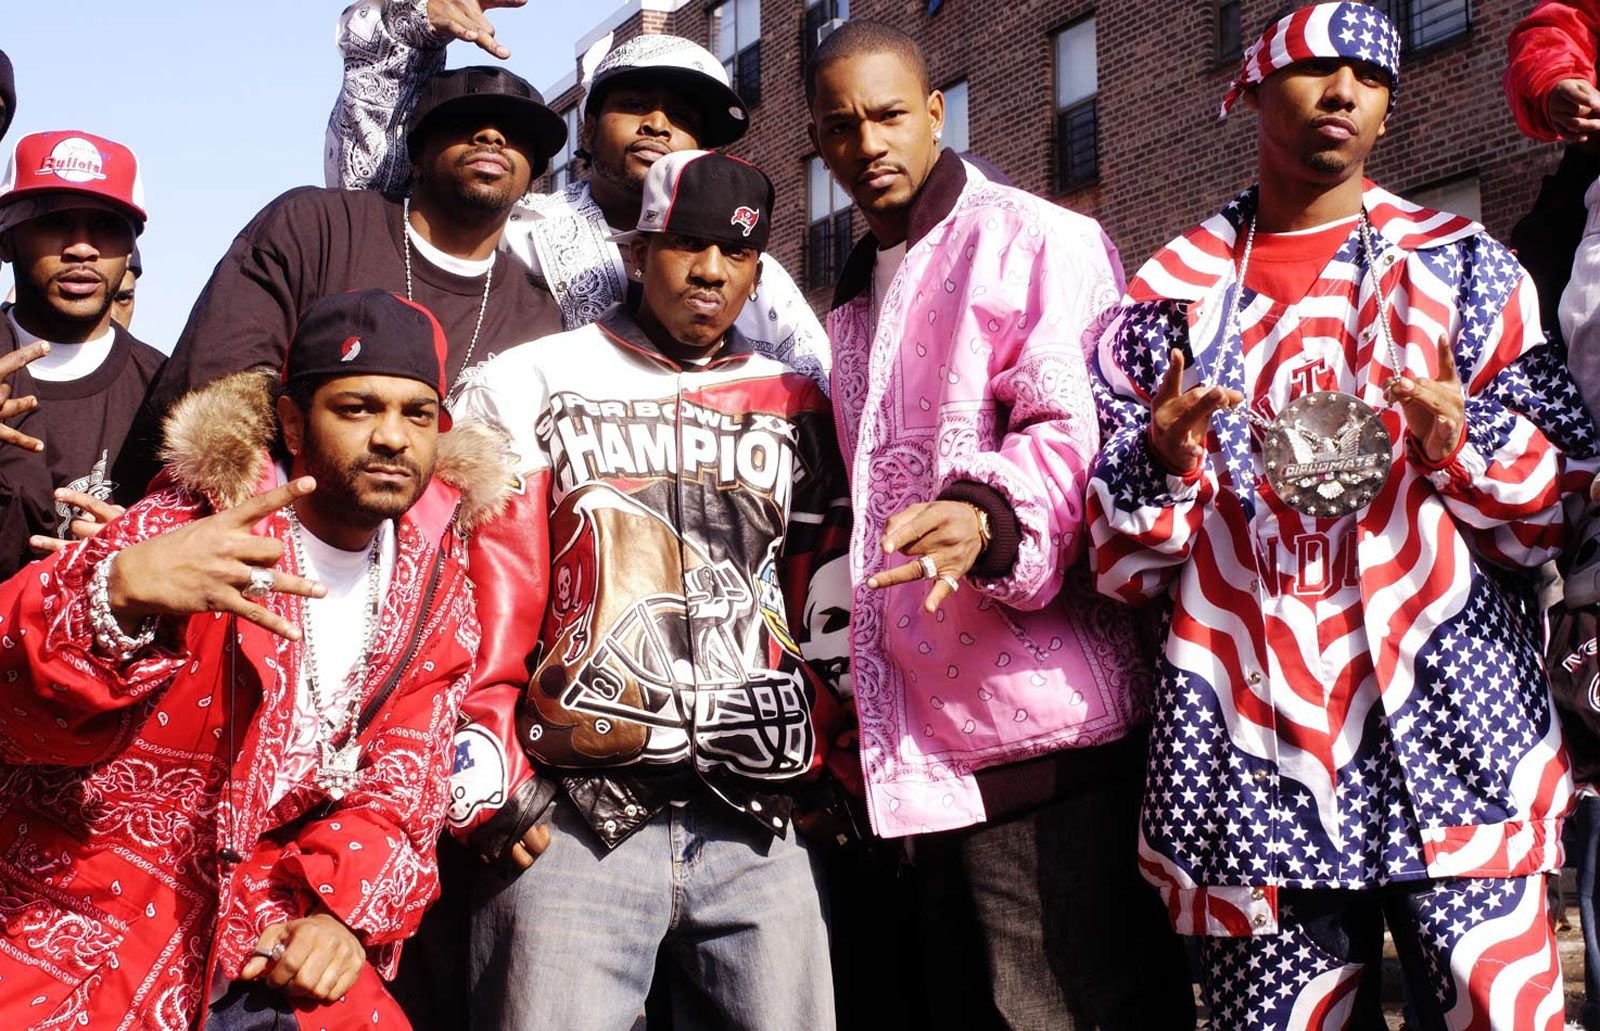 Разные рэпы. РЭПЕРЫ субкультура 2000. Хип хоп стиль в Америке 90е. Хип хоп США 90е. Хип хоп культура одежда 2000 Америка.